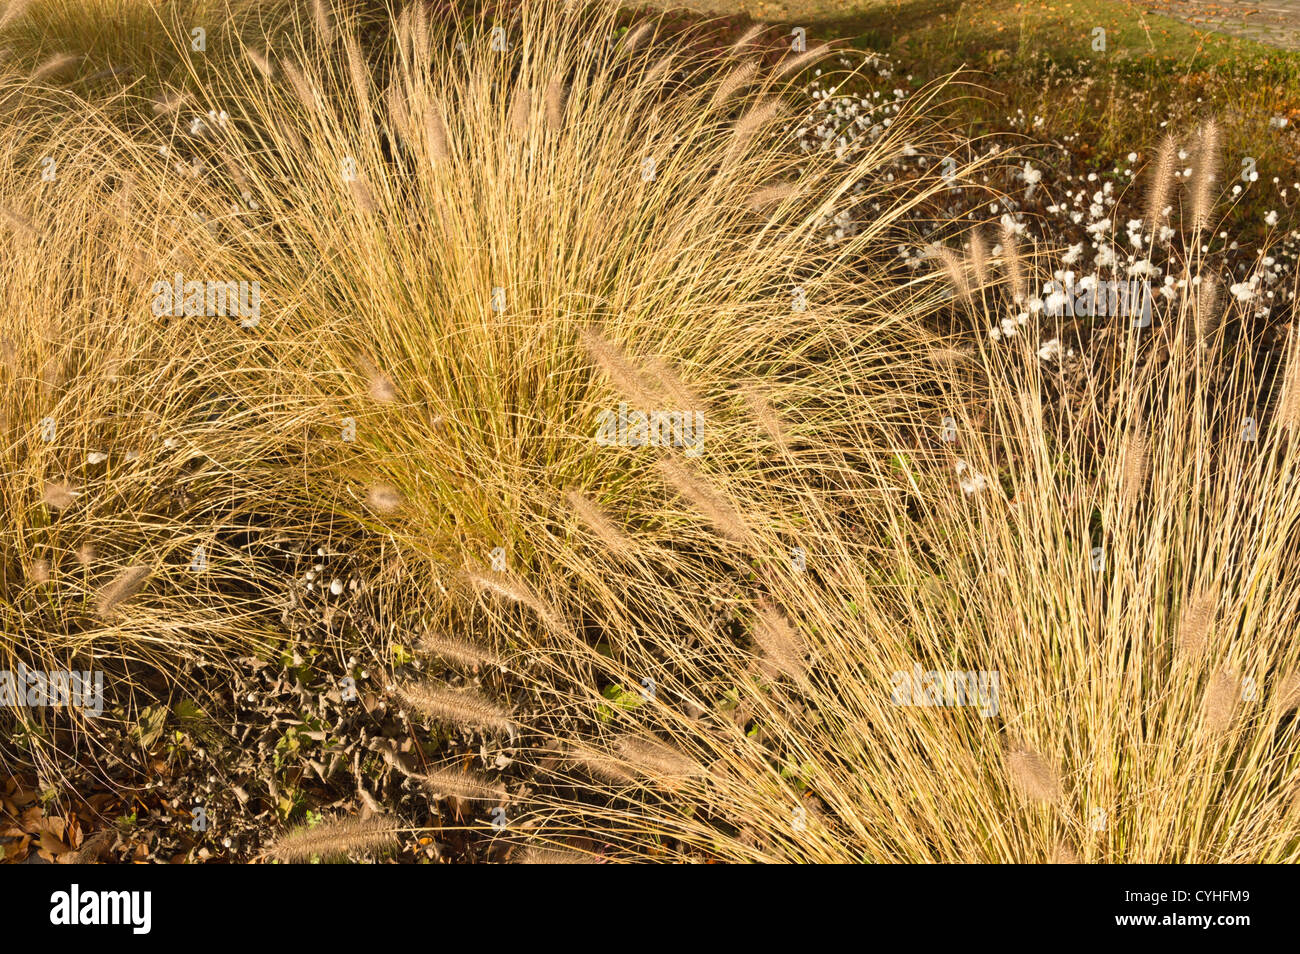 Dwarf fountain grass (Pennisetum alopecuroides) Stock Photo